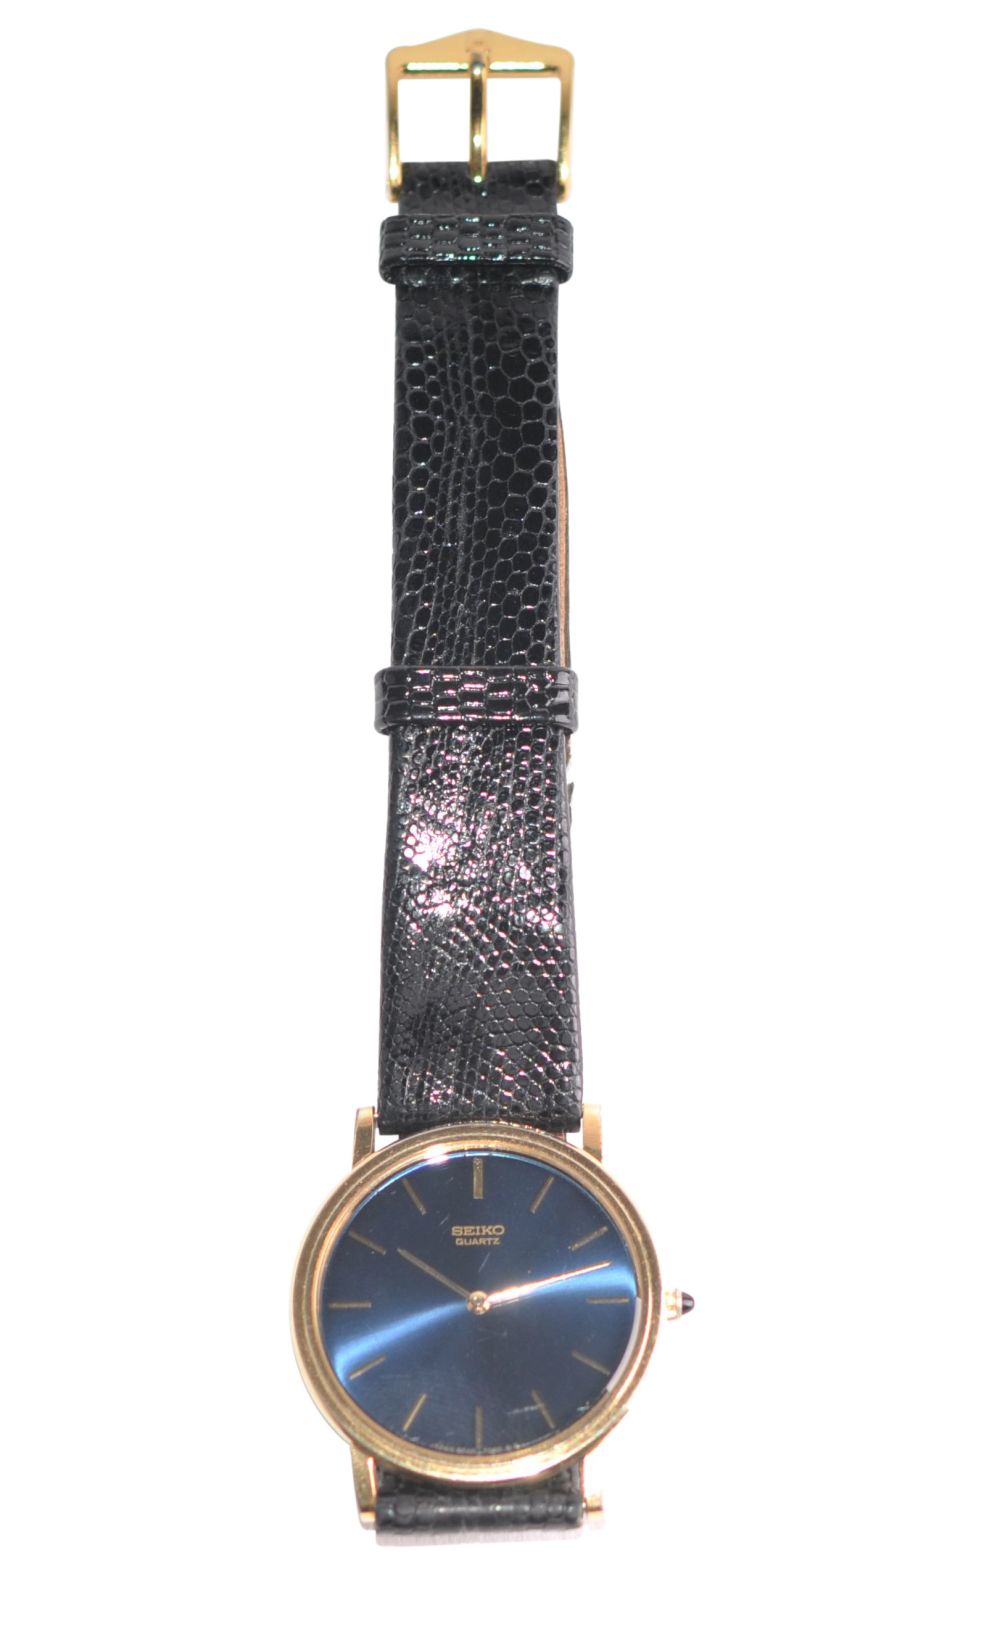 SeikoSeiko wristwatch gold-plated with blue dial, diameter 33mm, quartz movementSeikoSeiko - Image 2 of 3